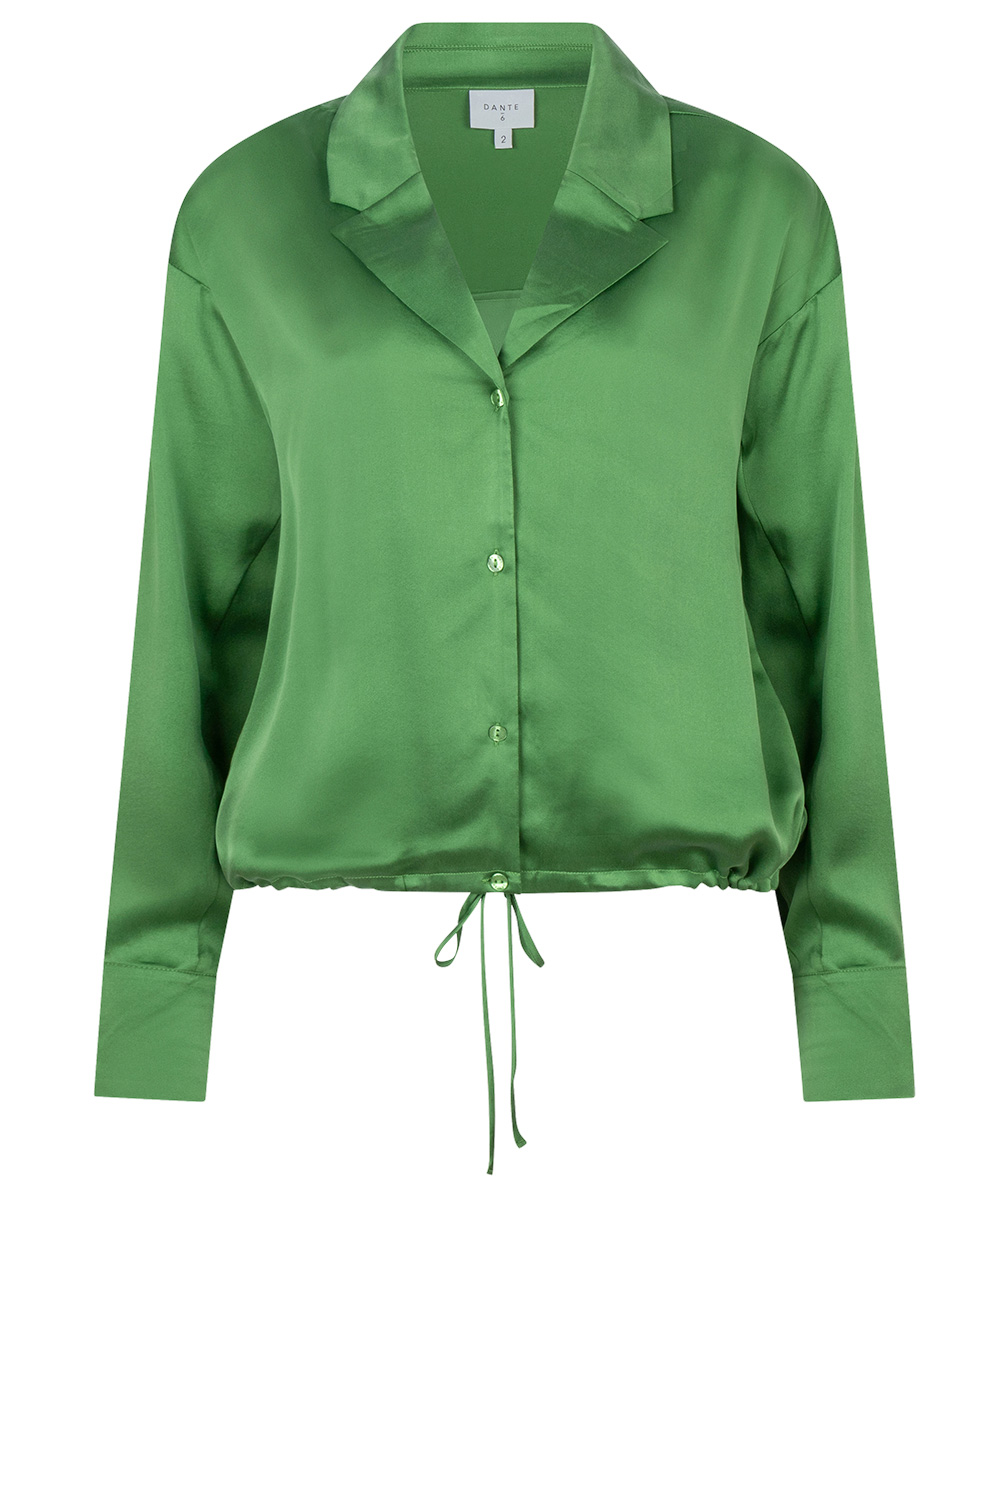 Dante 6 Stretch zijden blouse Emery groen